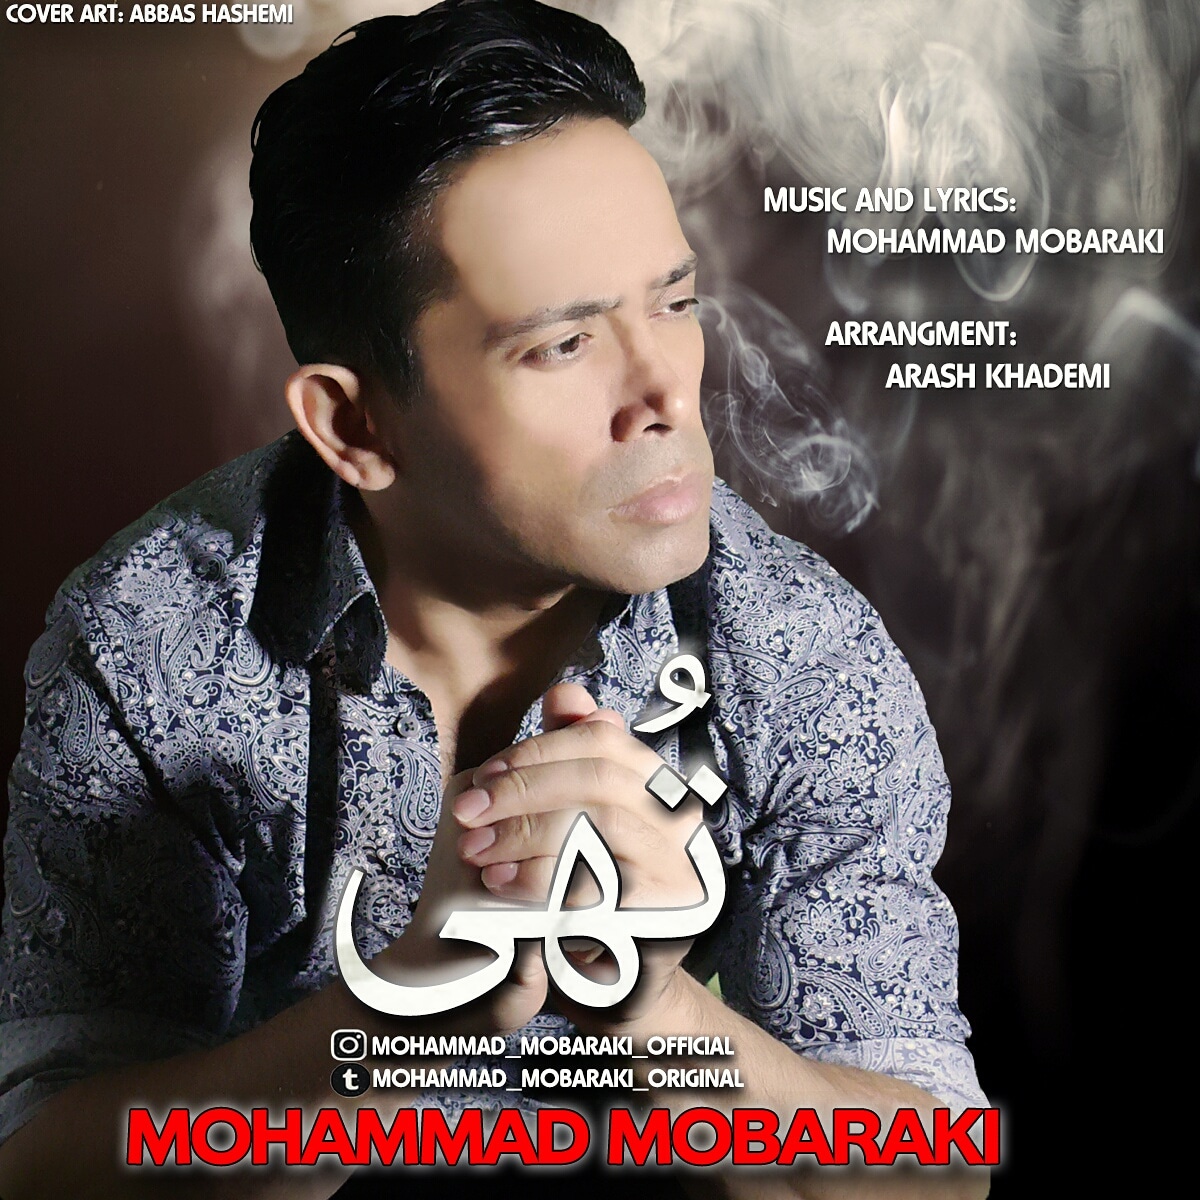  دانلود آهنگ جدید محمد مبارکی - تهی | Download New Music By Mohammad Mobaraki - Tohi